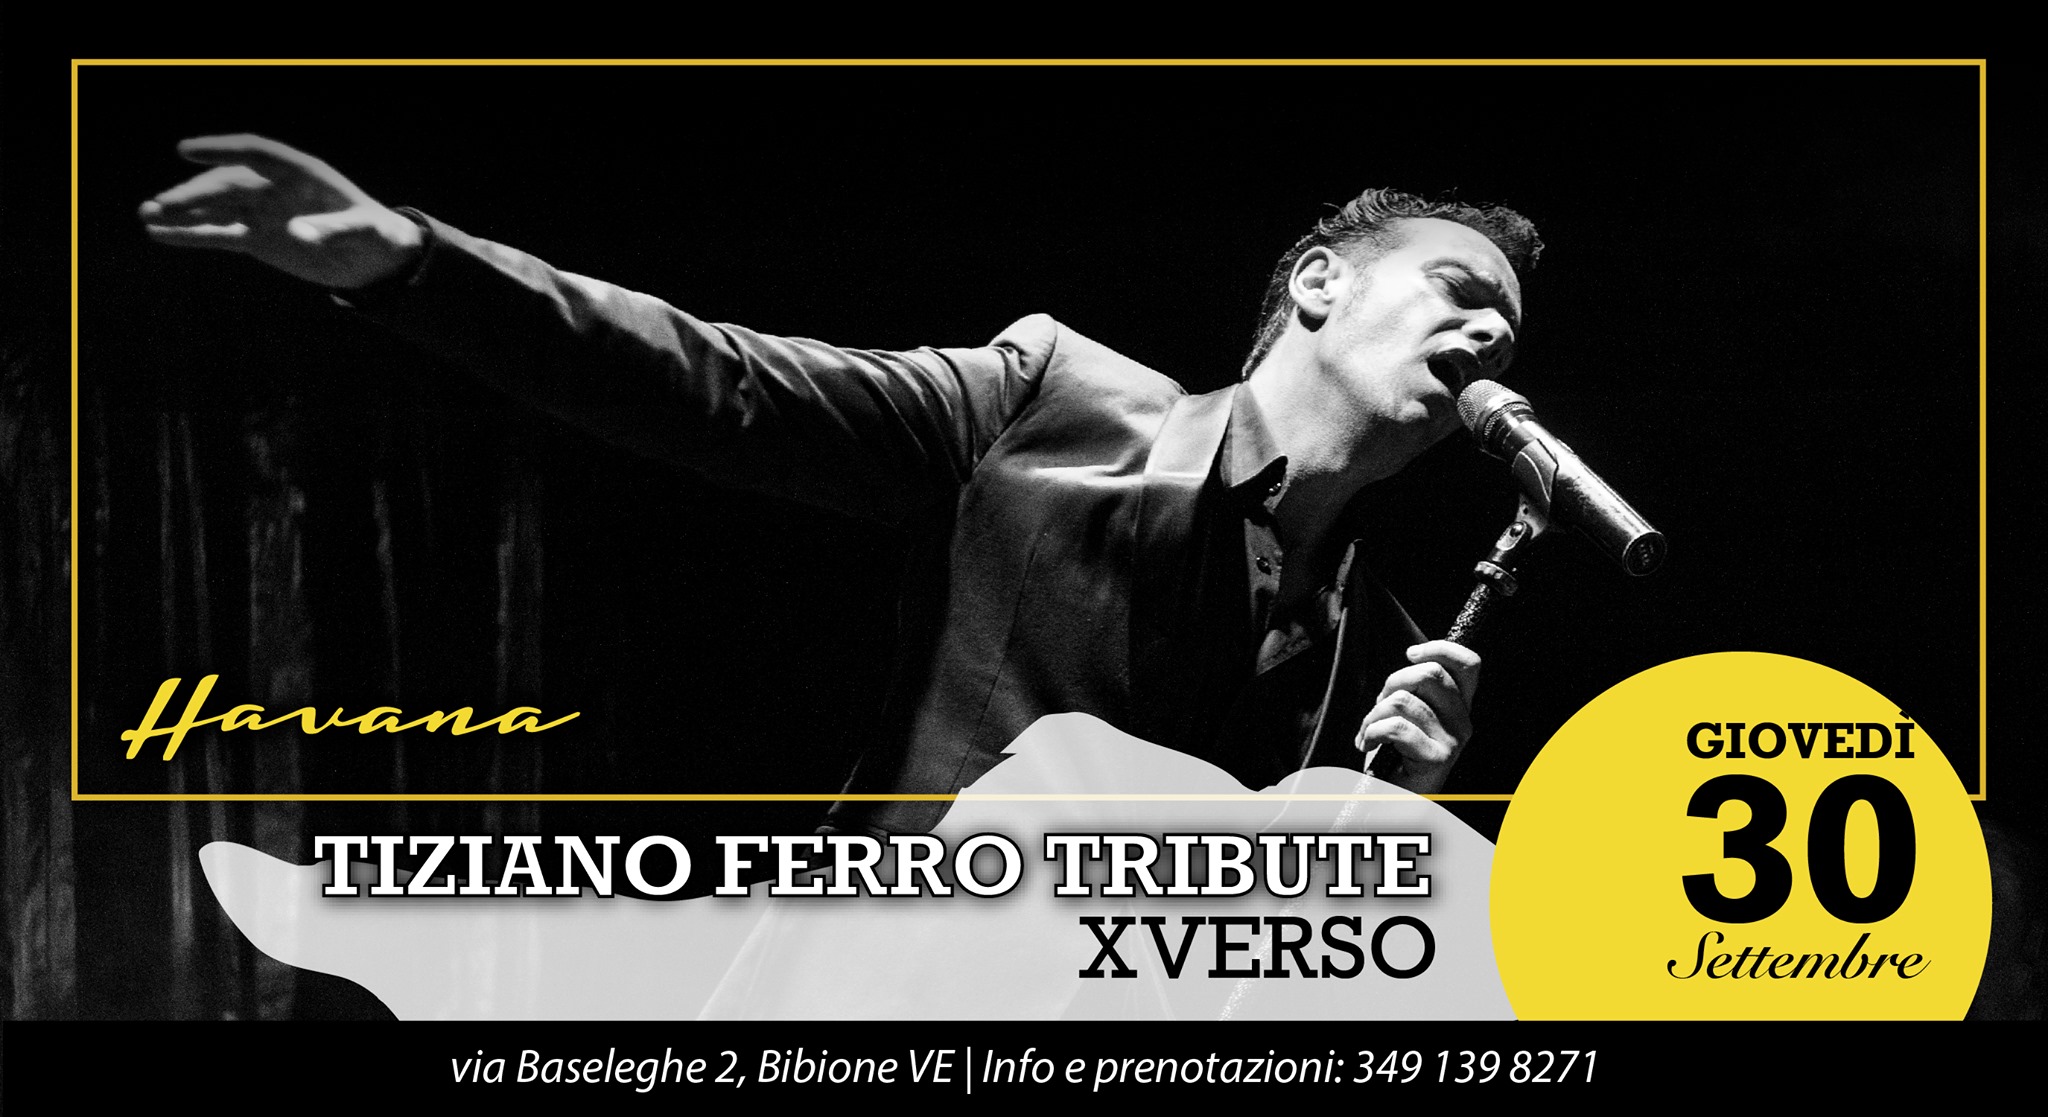 XVERSO, Tiziano Ferro Tribute - Havana Bibione - EventiFVG.it